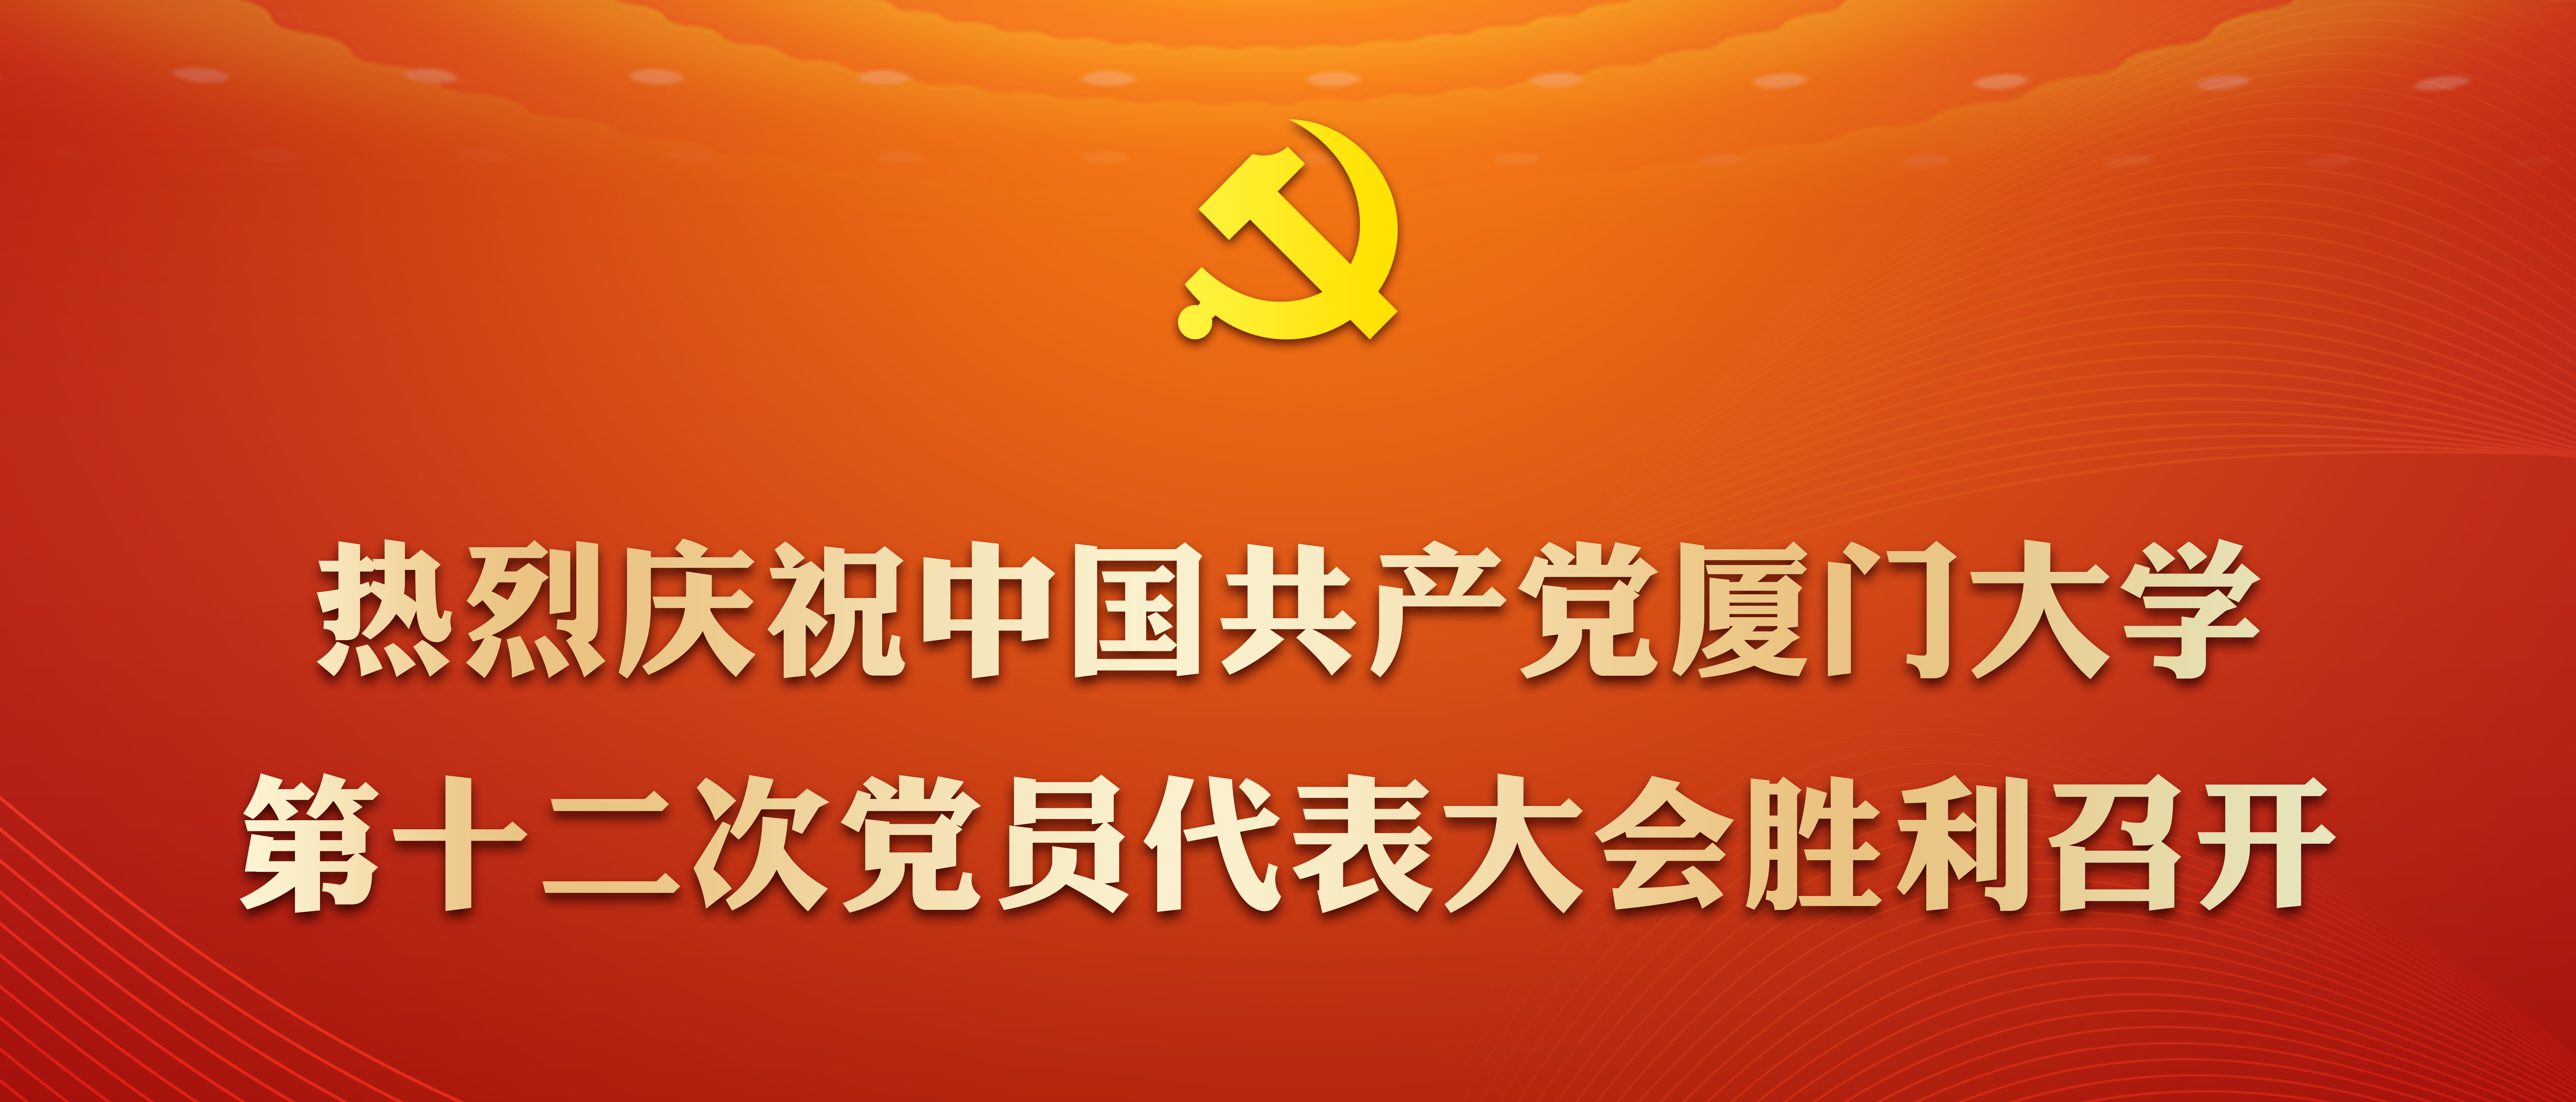 热烈庆祝中国共产党永利皇宫8463的网址第十...